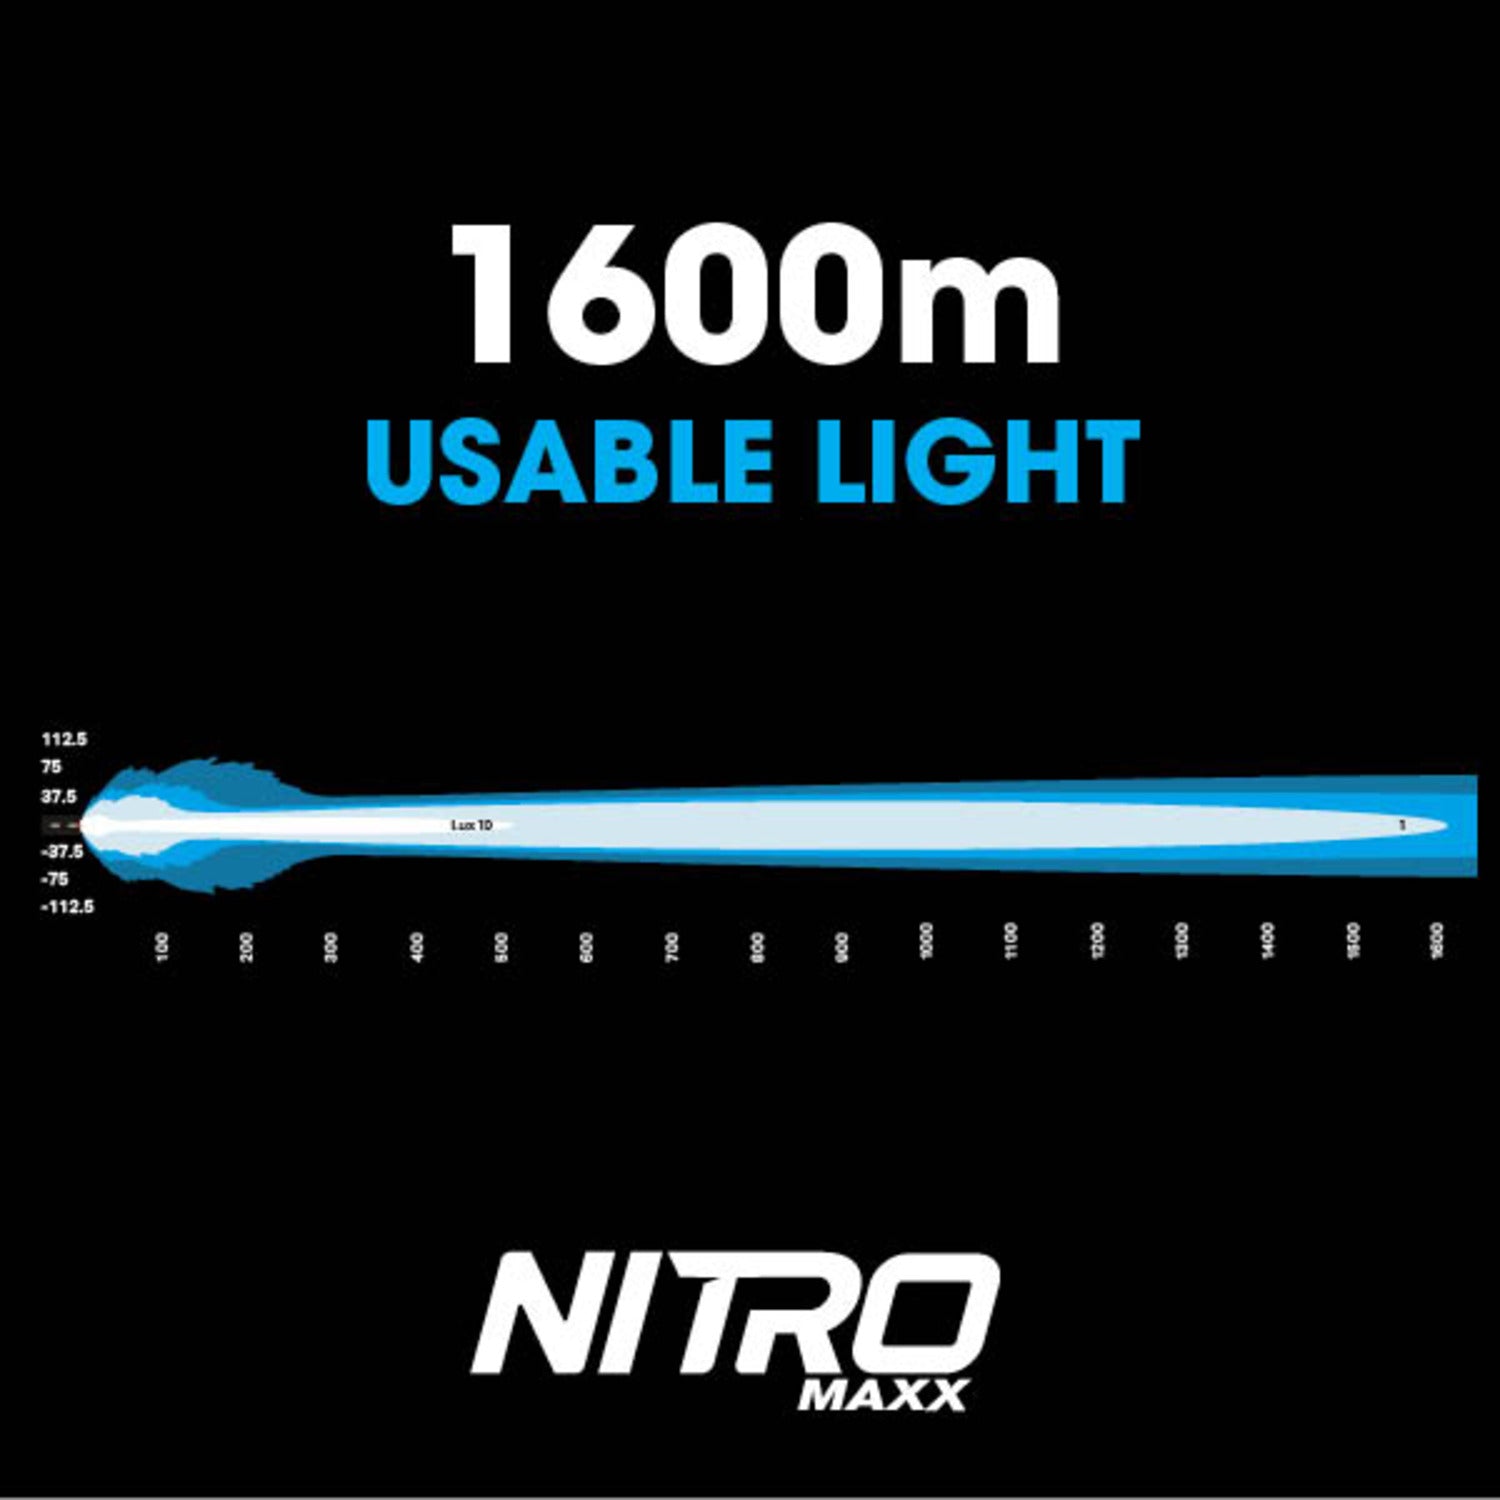 NITRO 140 MAXX 9IN LED DRIVING Light